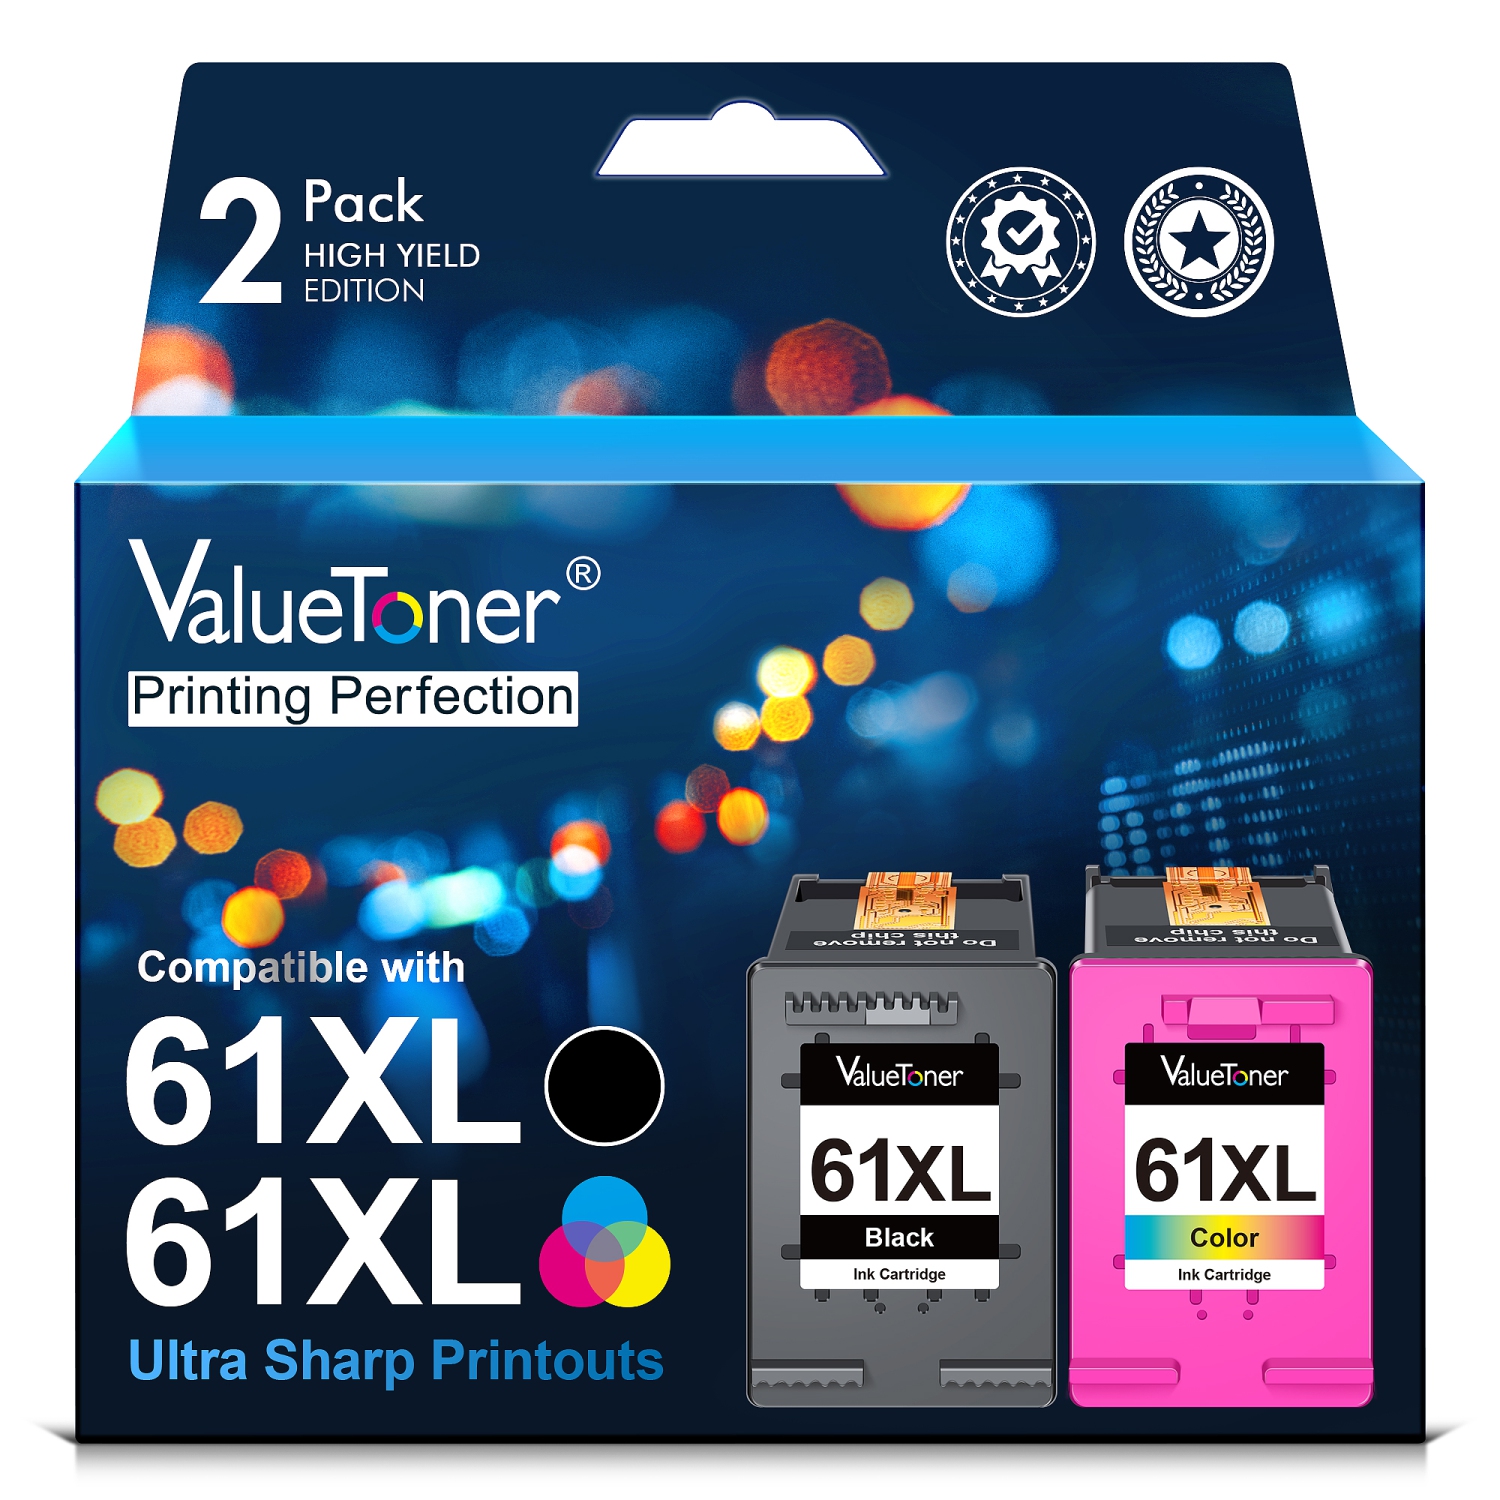 Valuetoner Refurbished (Excellent) Ink Cartridges Replacement for HP 61XL 61 XL for Envy 4500 4502 5530 Deskjet 1000 1056 1510 1512 1010 (Black, Color, 2-Pack)